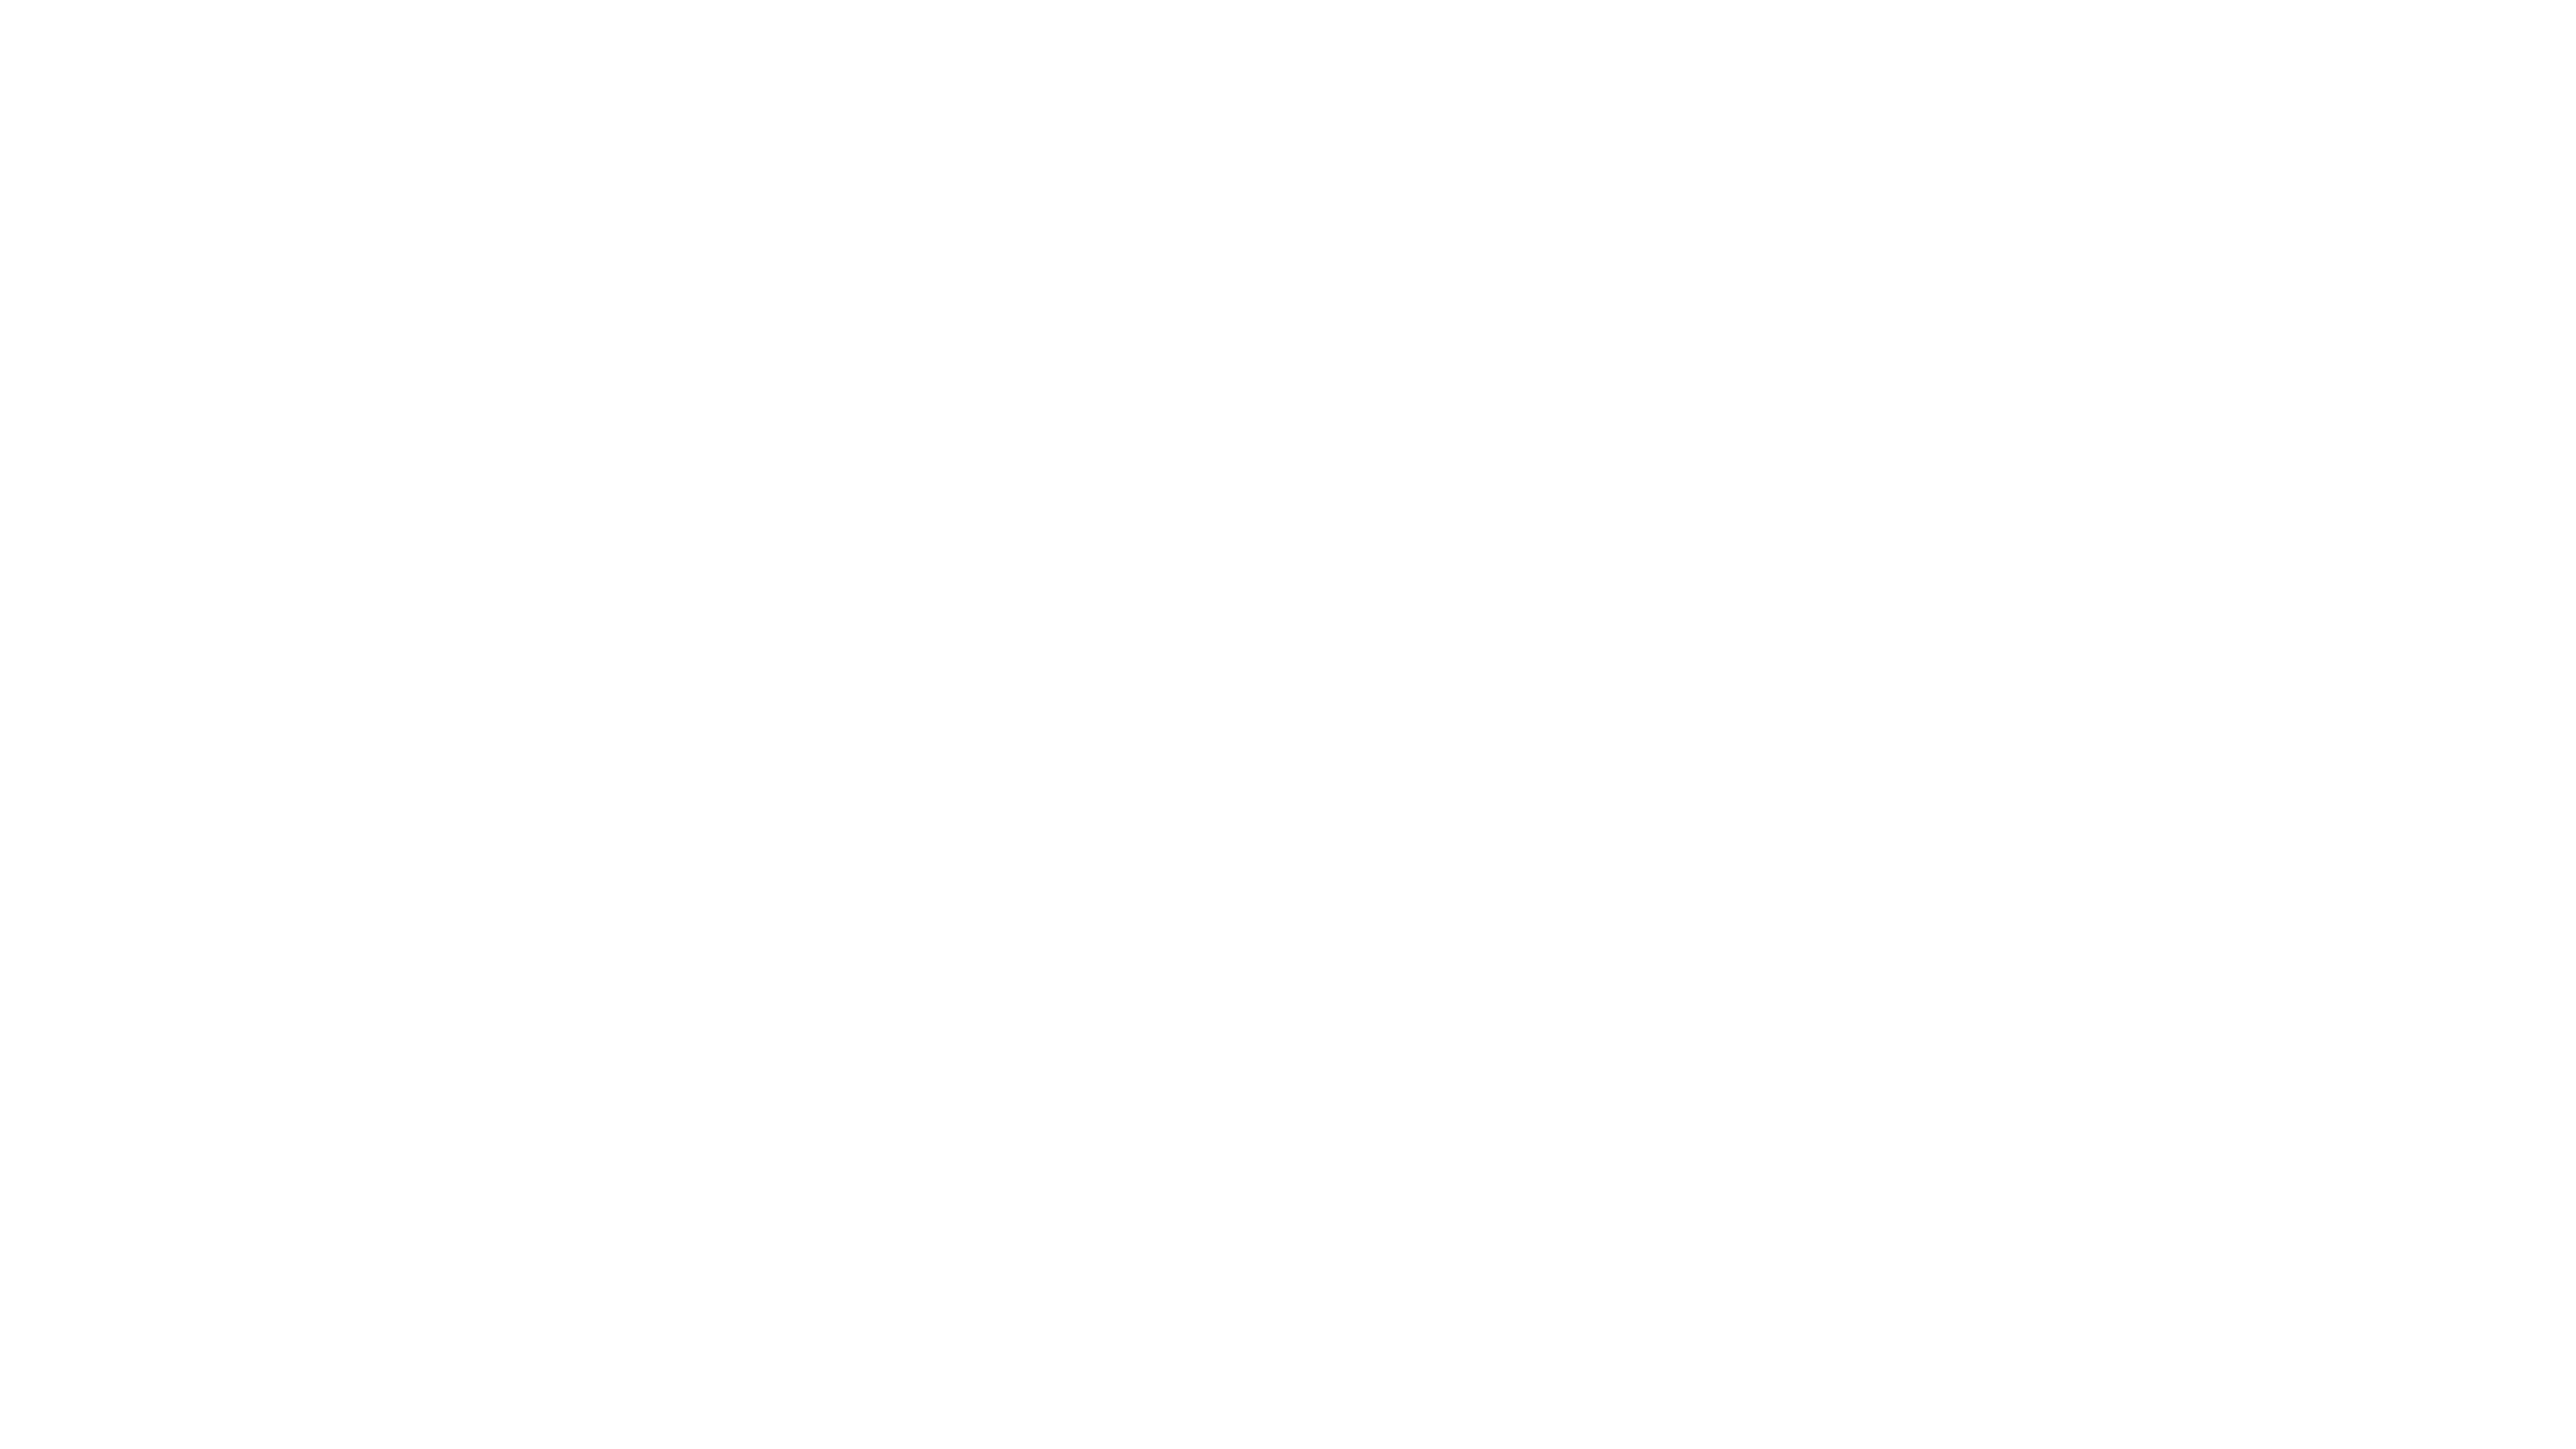 Seek® logo in white